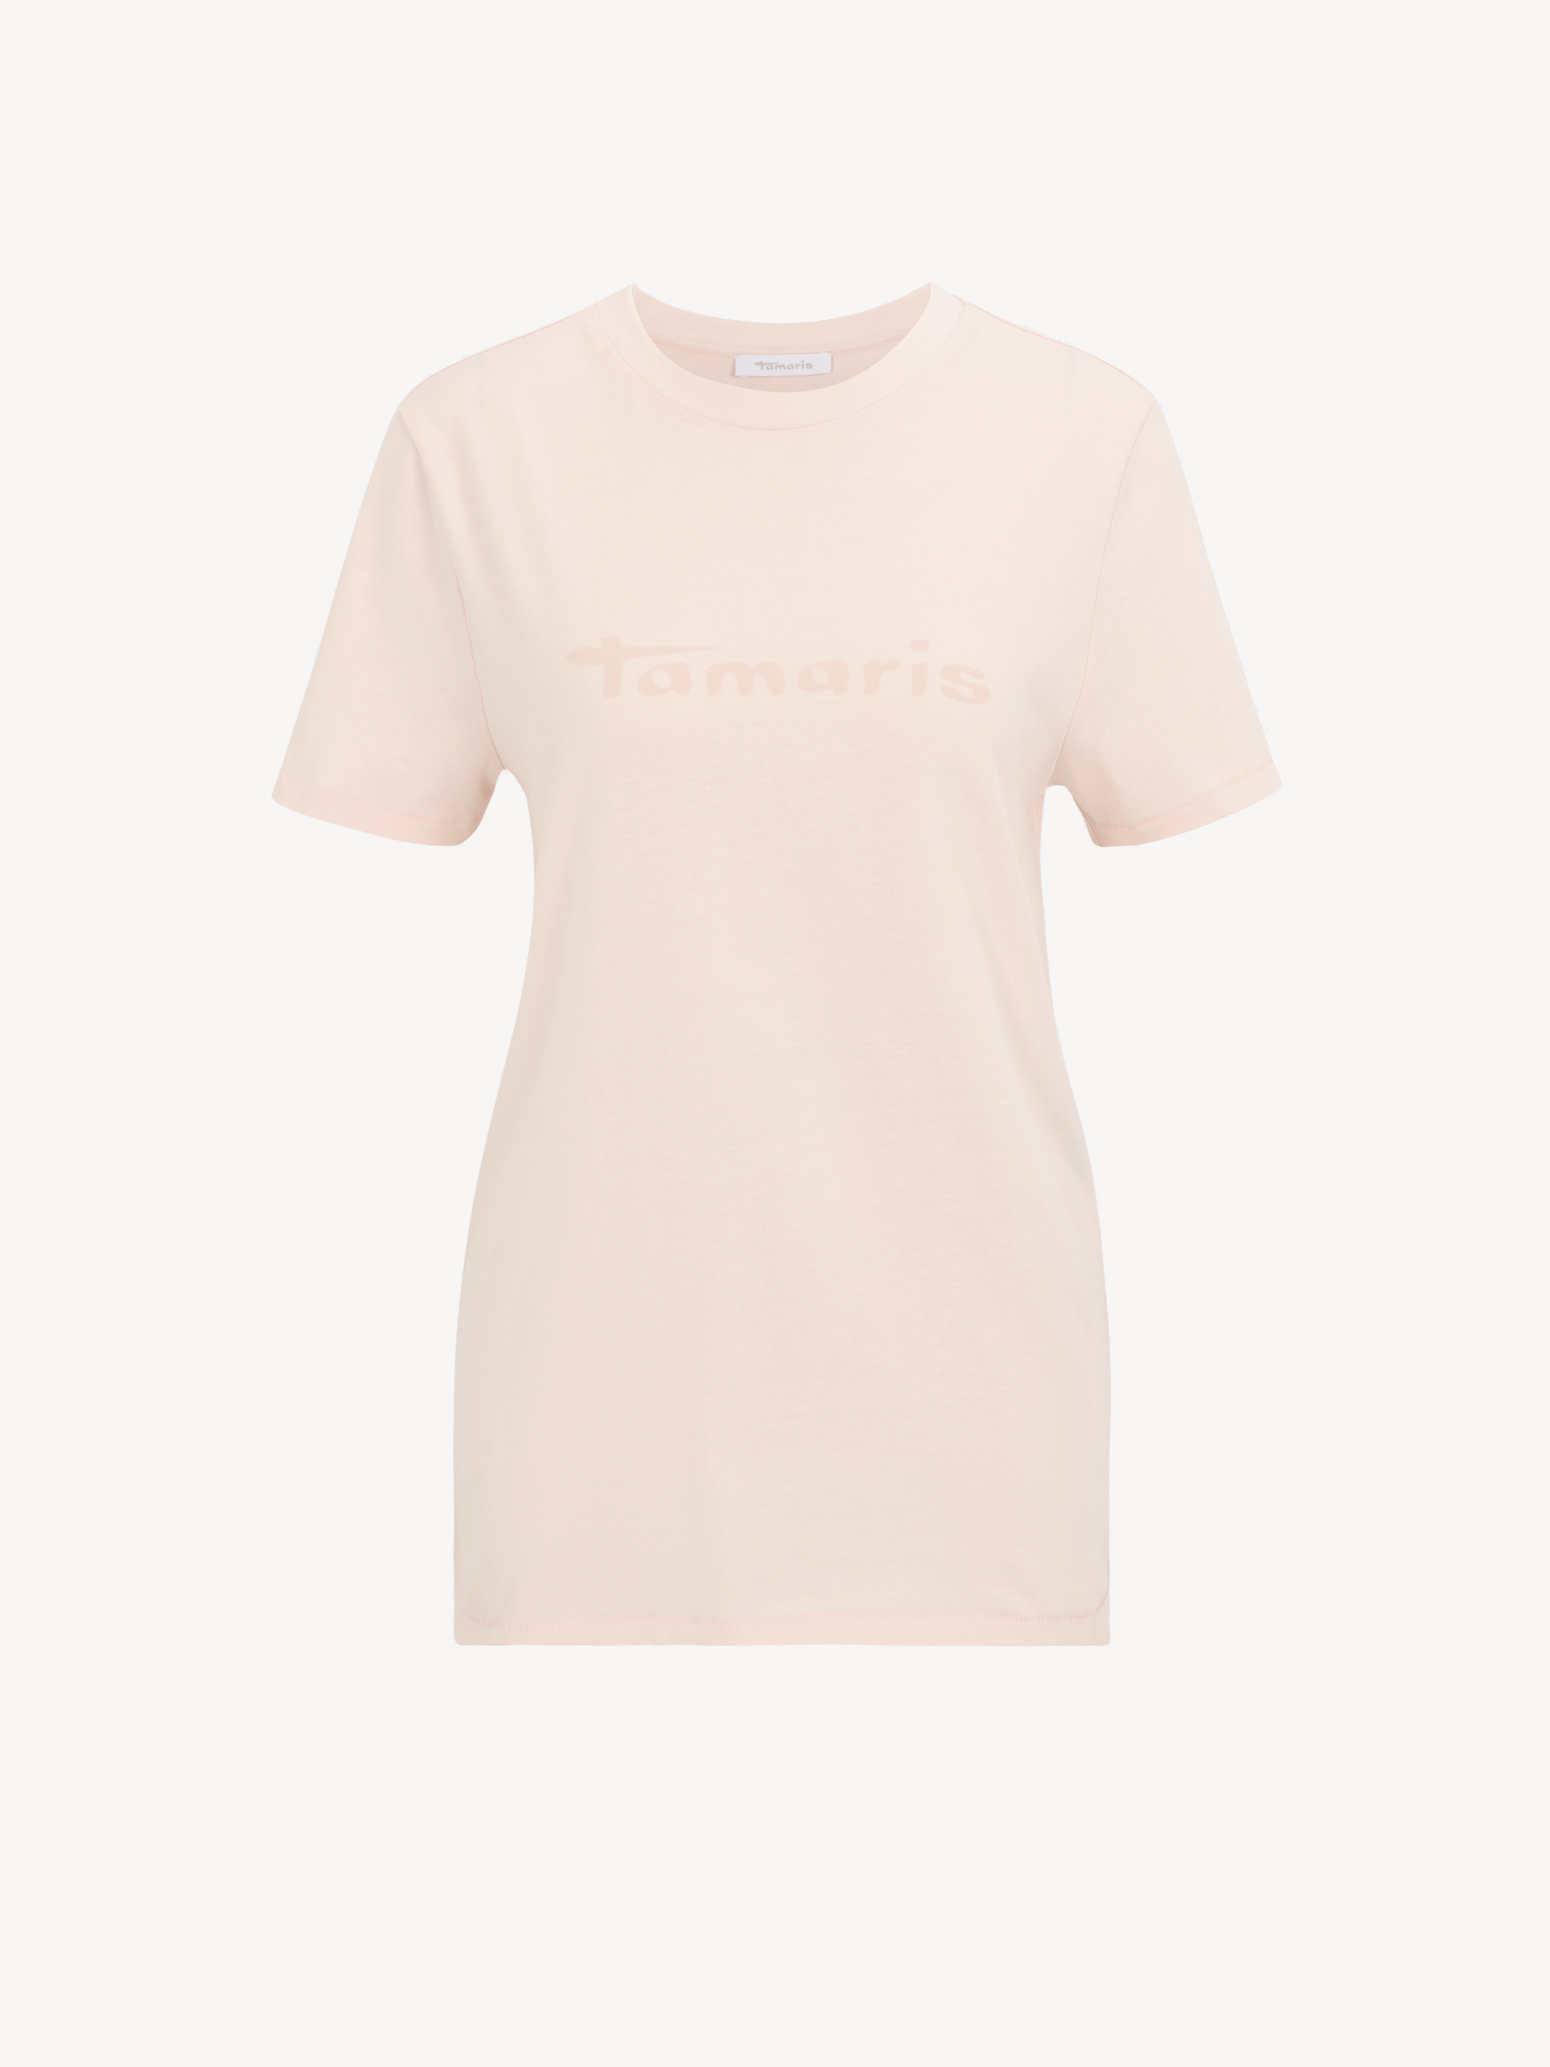 Buy Tamaris Shirts & Tops now! online